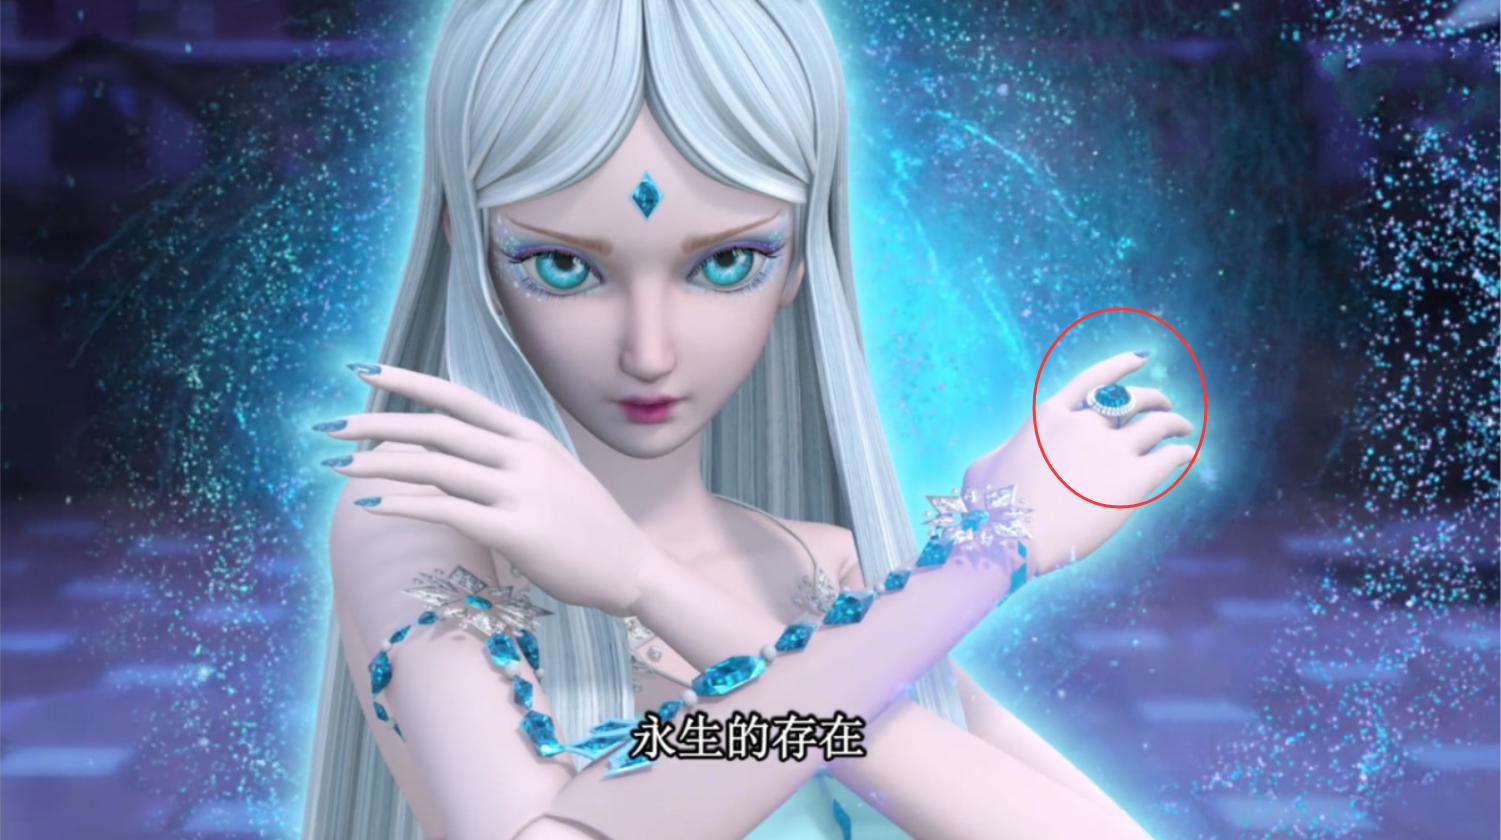 叶罗丽:其实冰公主有两枚蓝宝石戒指,这个秘密很多人没发现